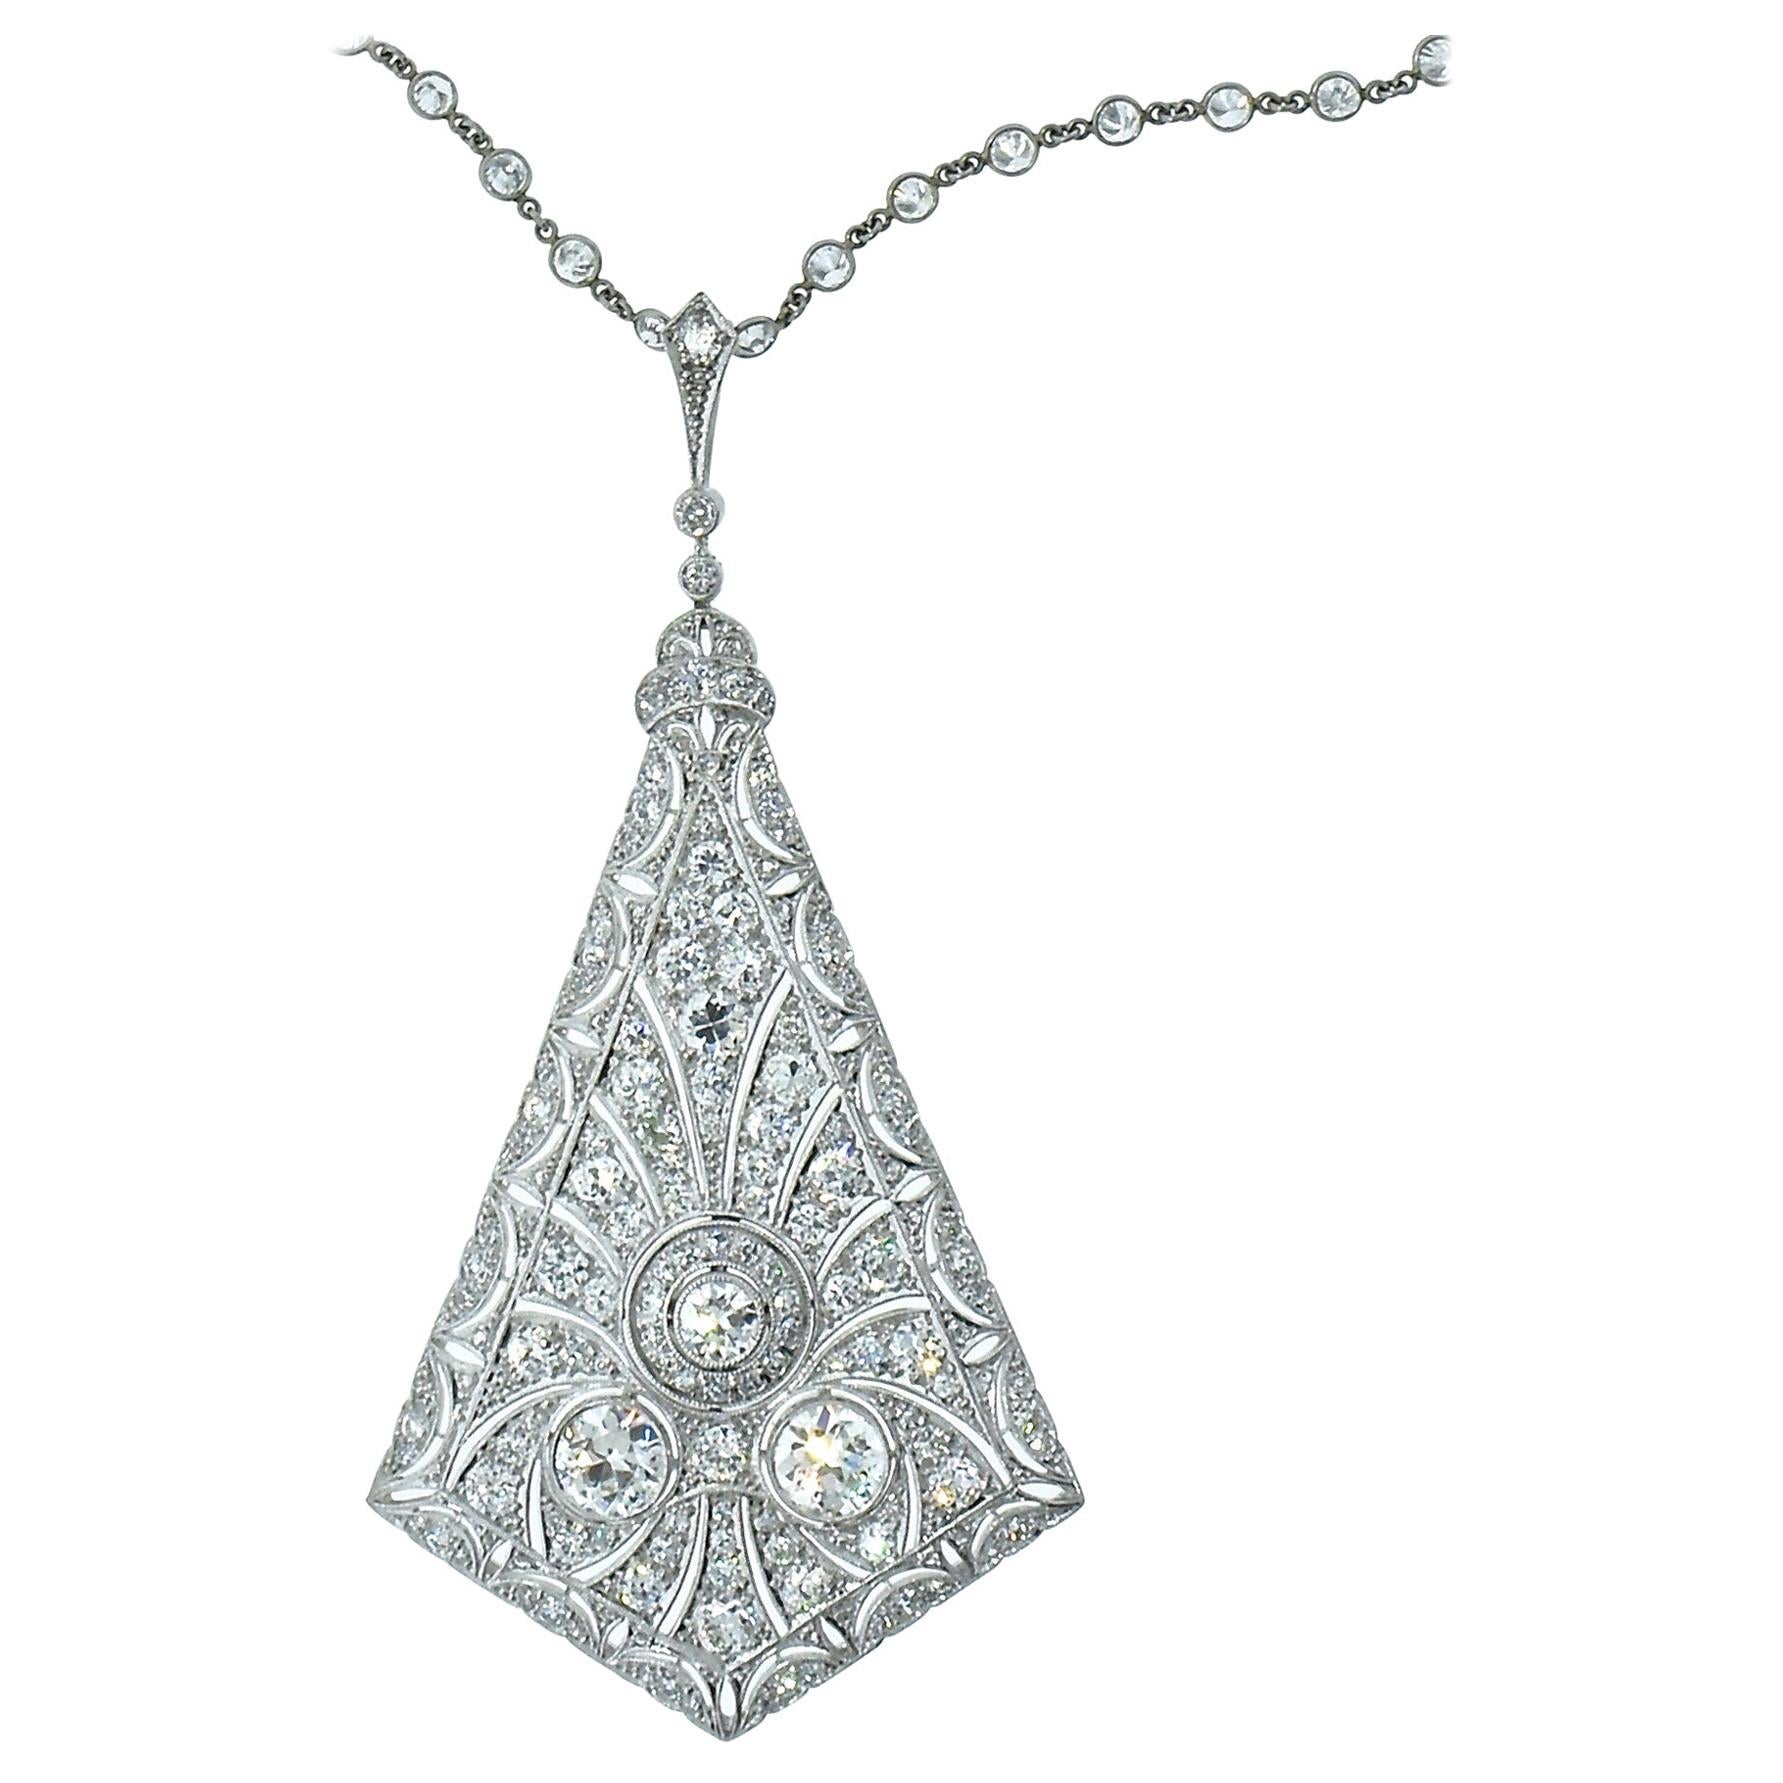 Antique Platinum and Diamond Necklace, circa 1915